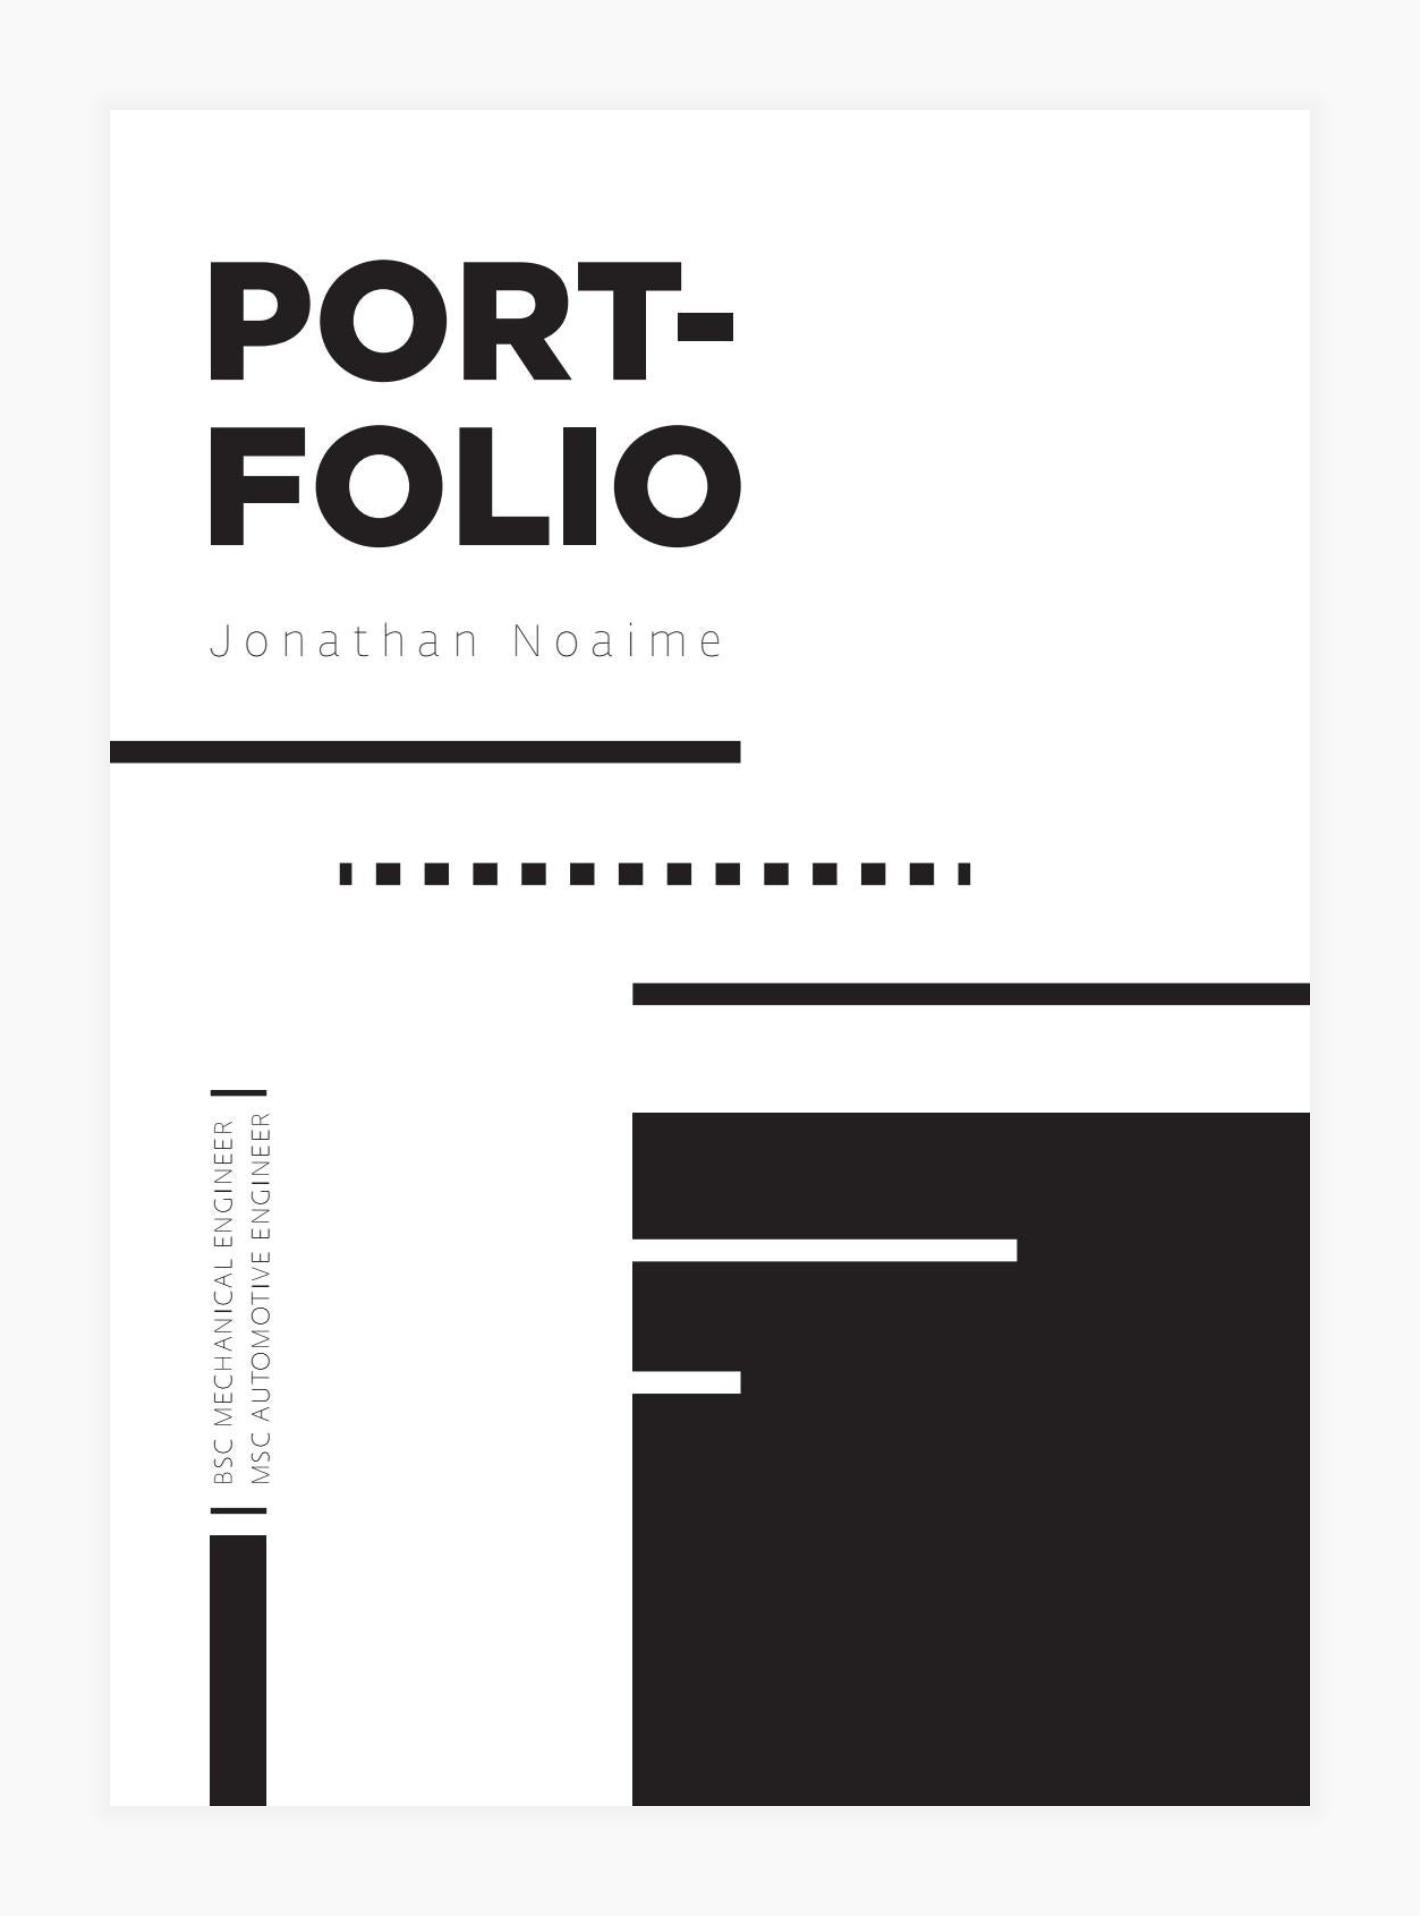 Screenshot of a product design engineer portfolio cover